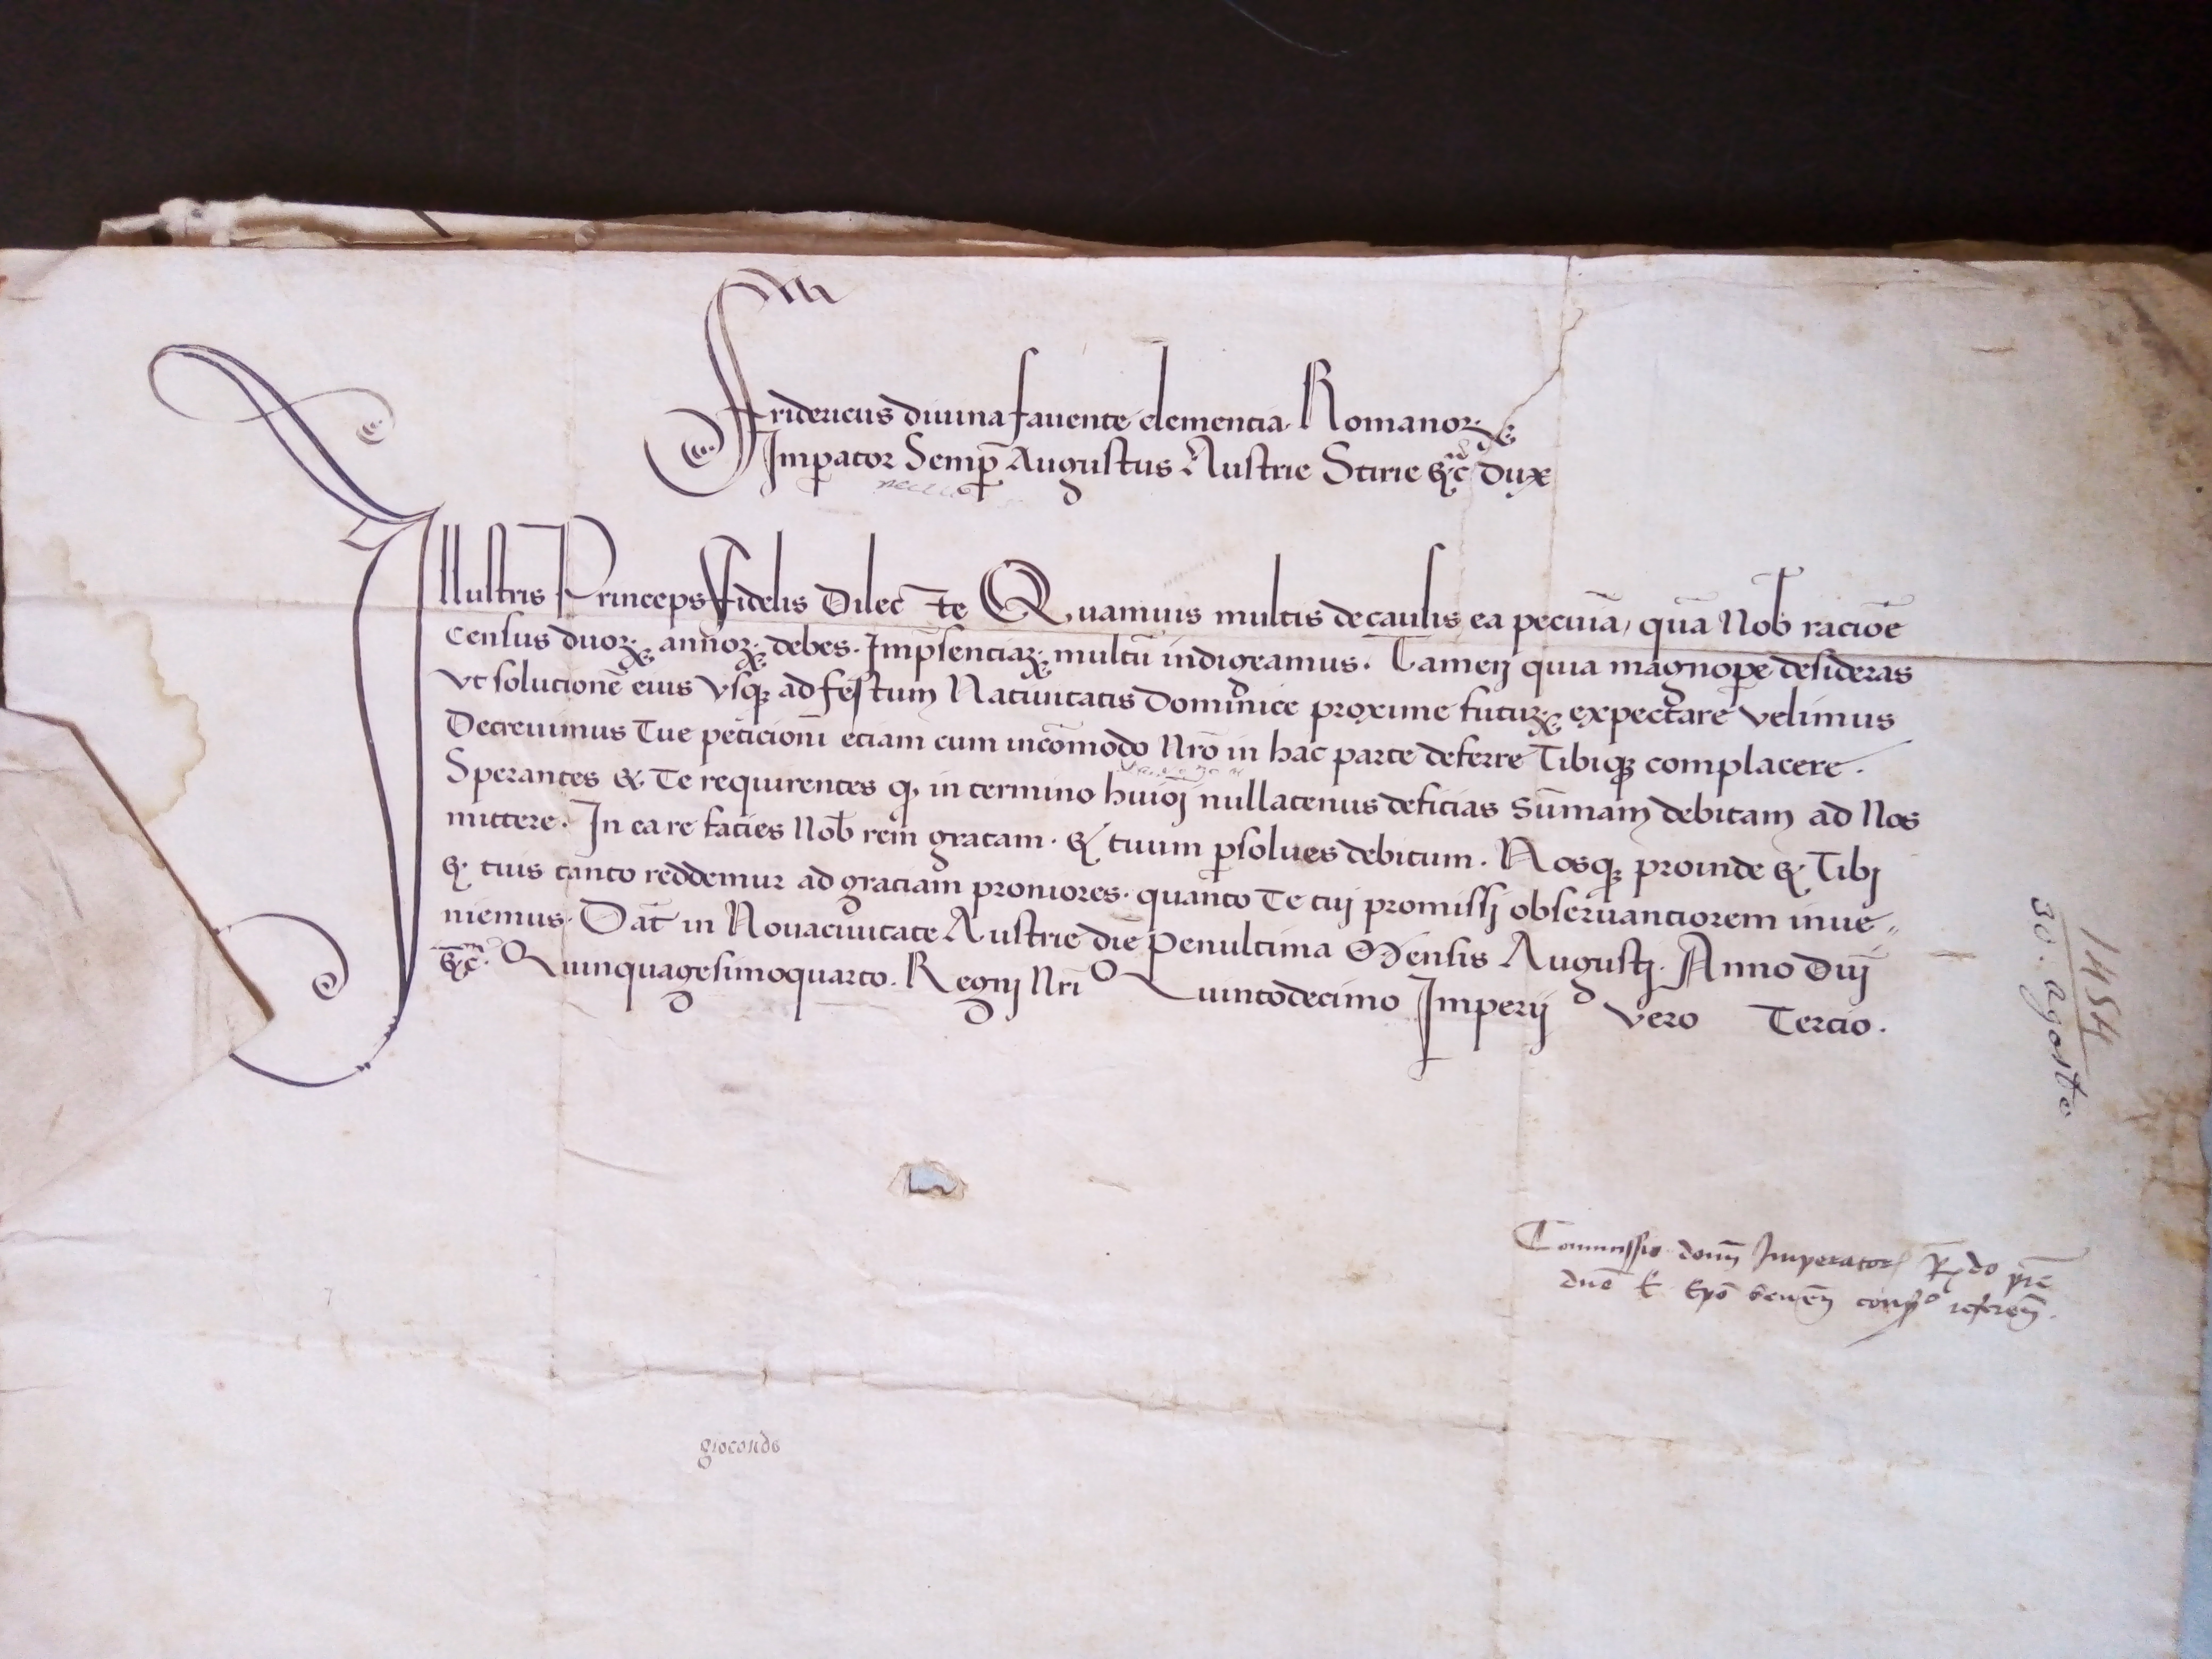 Tav. 4 – Wiener Neustadt, 30 agosto 1454: Federico III concede a Borso d’Este una dilazione del pagamento del censo.  (ASMo, Archivio Segreto Estense, Cancelleria, Carteggio con principi esteri, Germania, b. 1, fasc. 1575/1) 